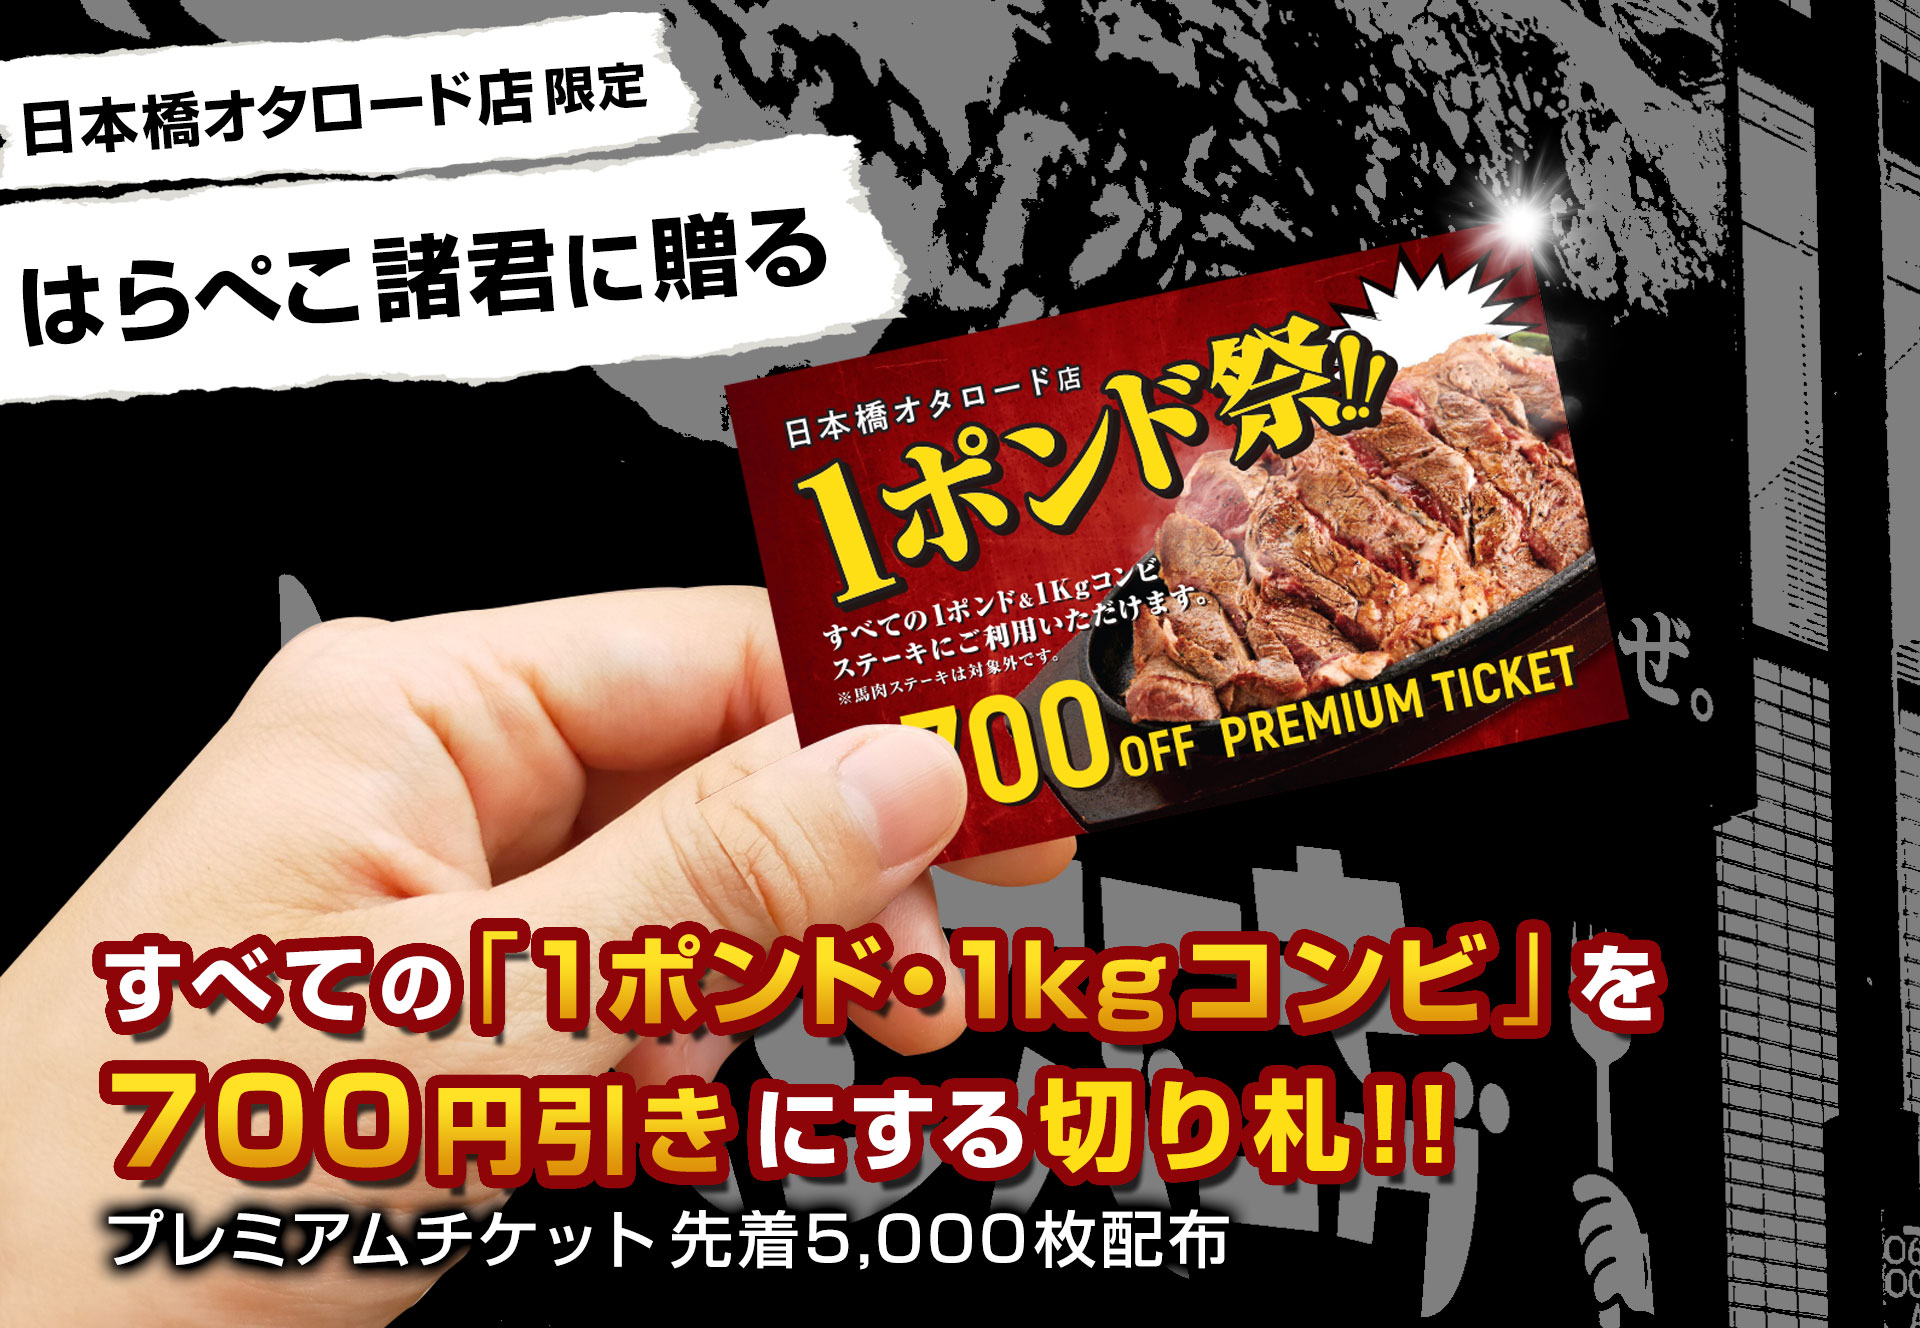 【日本橋オタロード店】1ポンド、1kgコンビを700円引きにする『1ポンド祭り』プレミアムチケット配布！